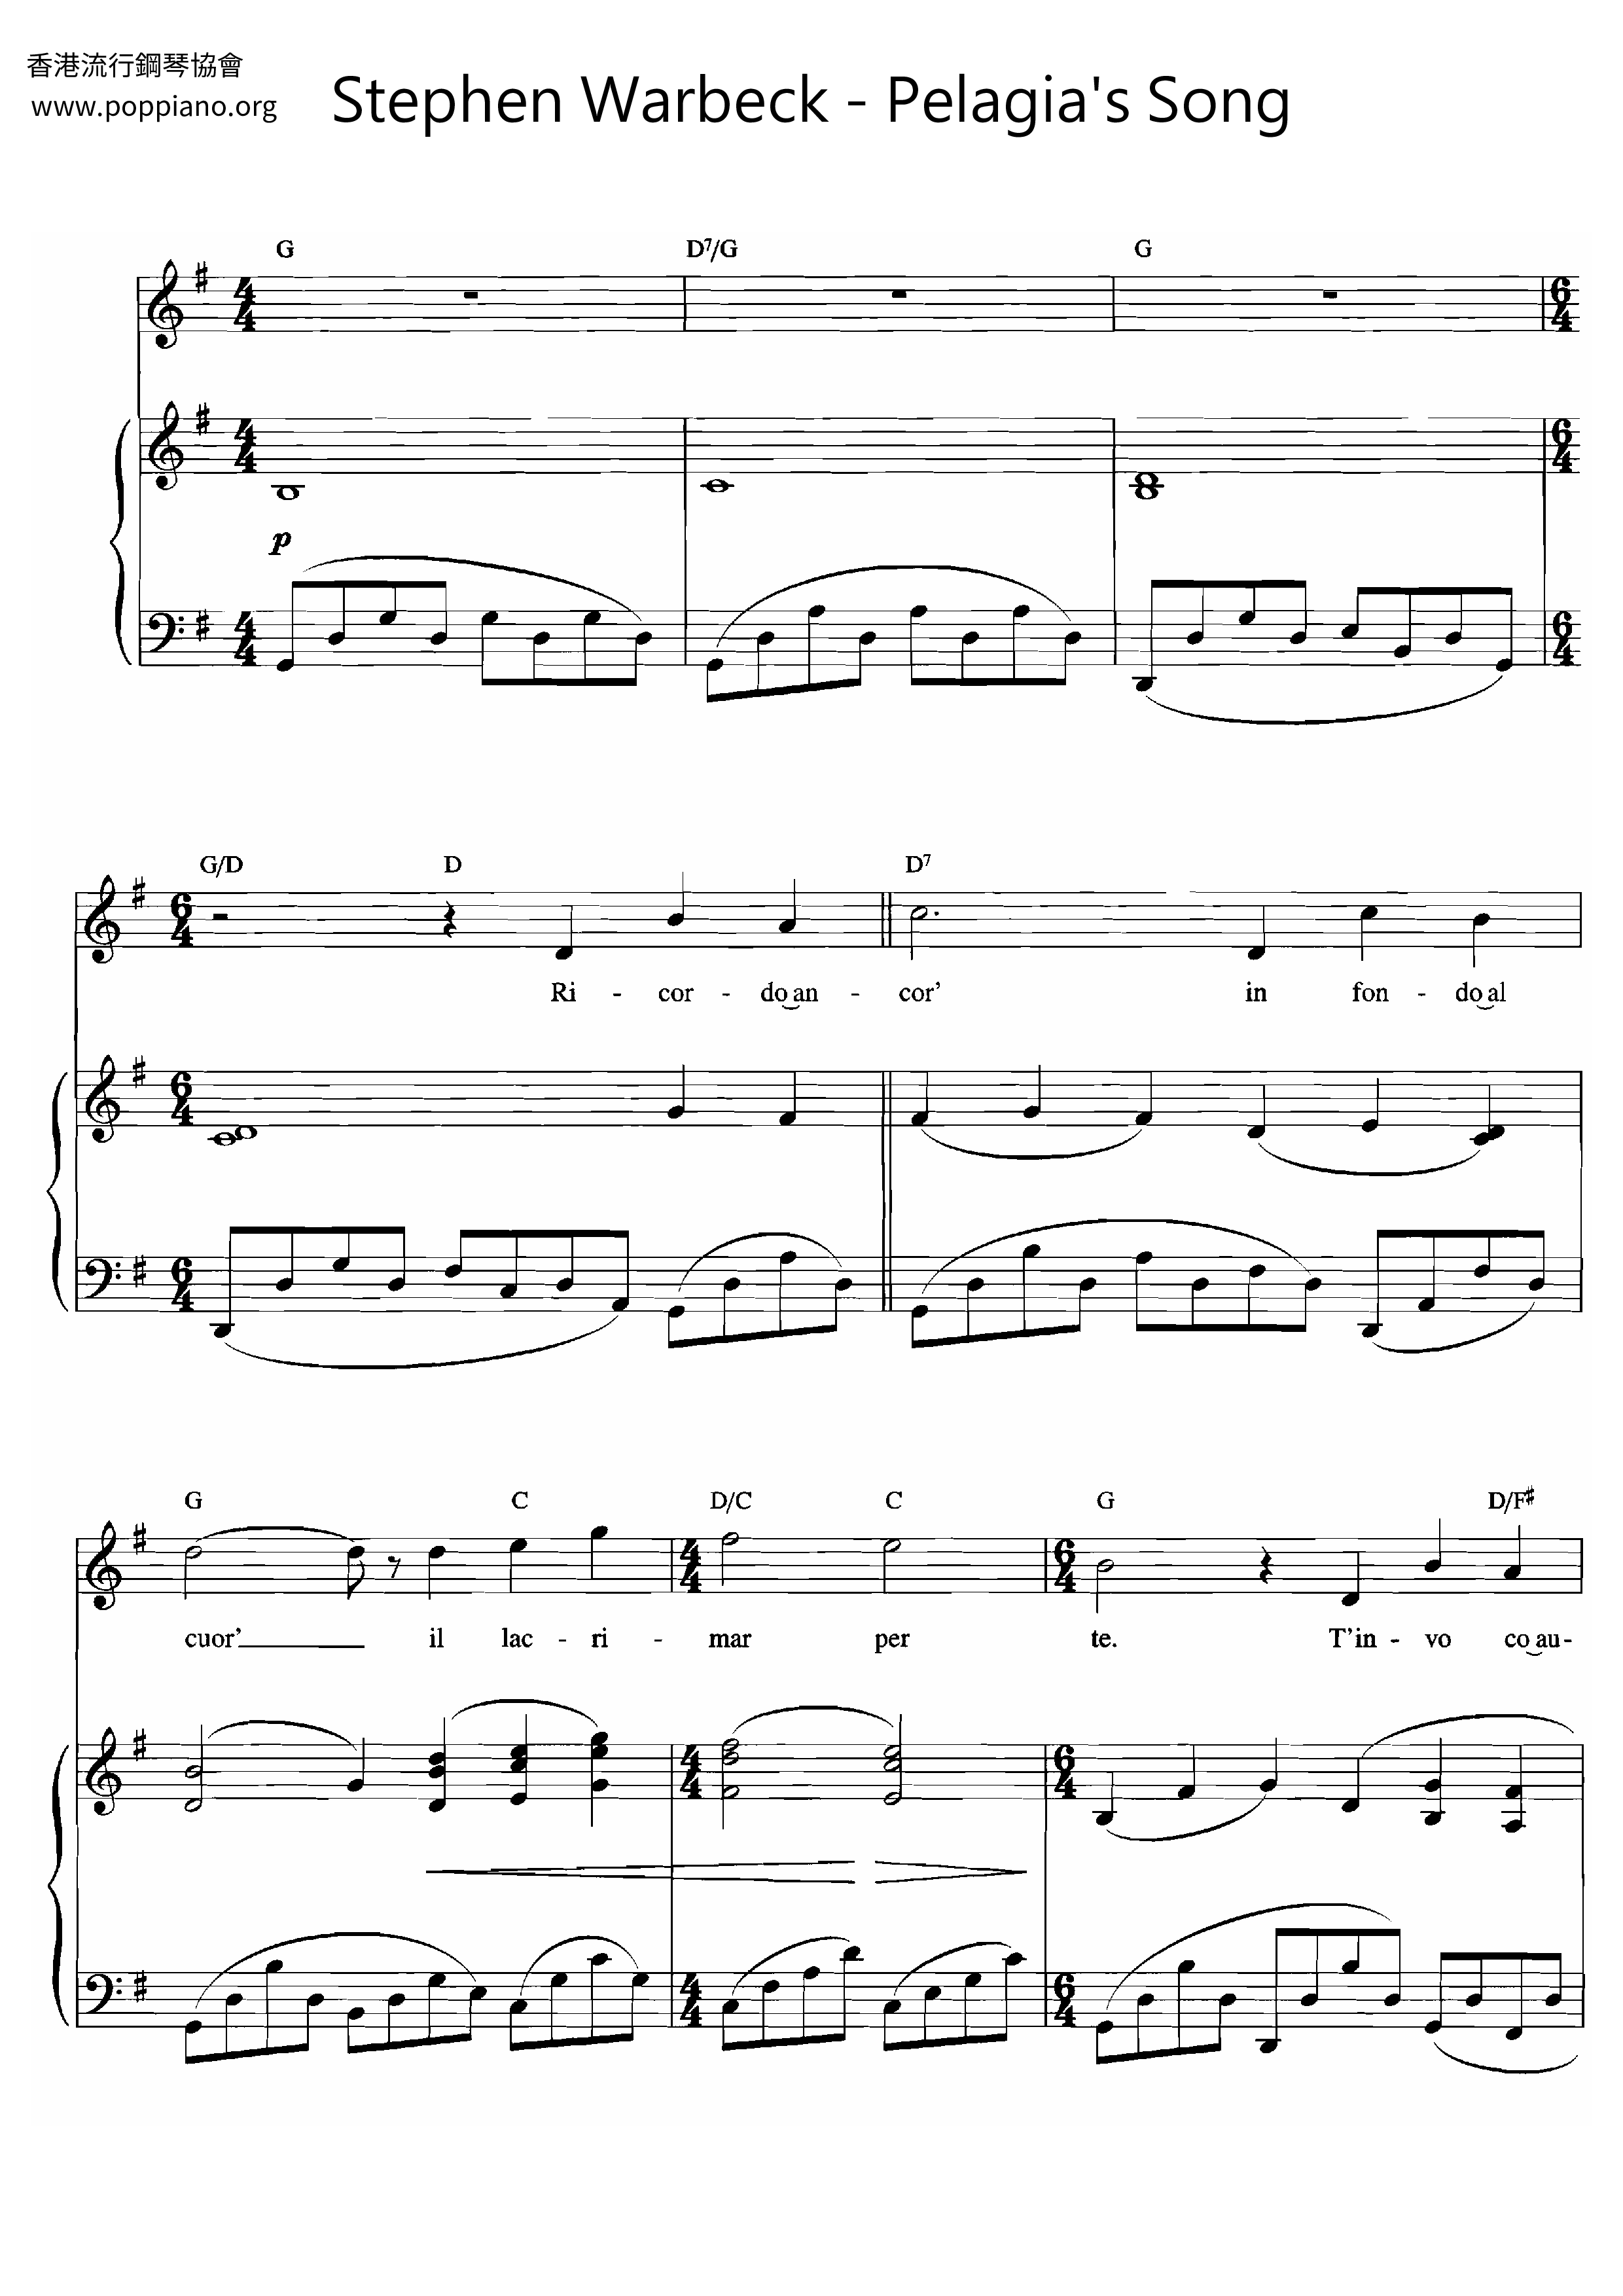 Pelagia's Songピアノ譜